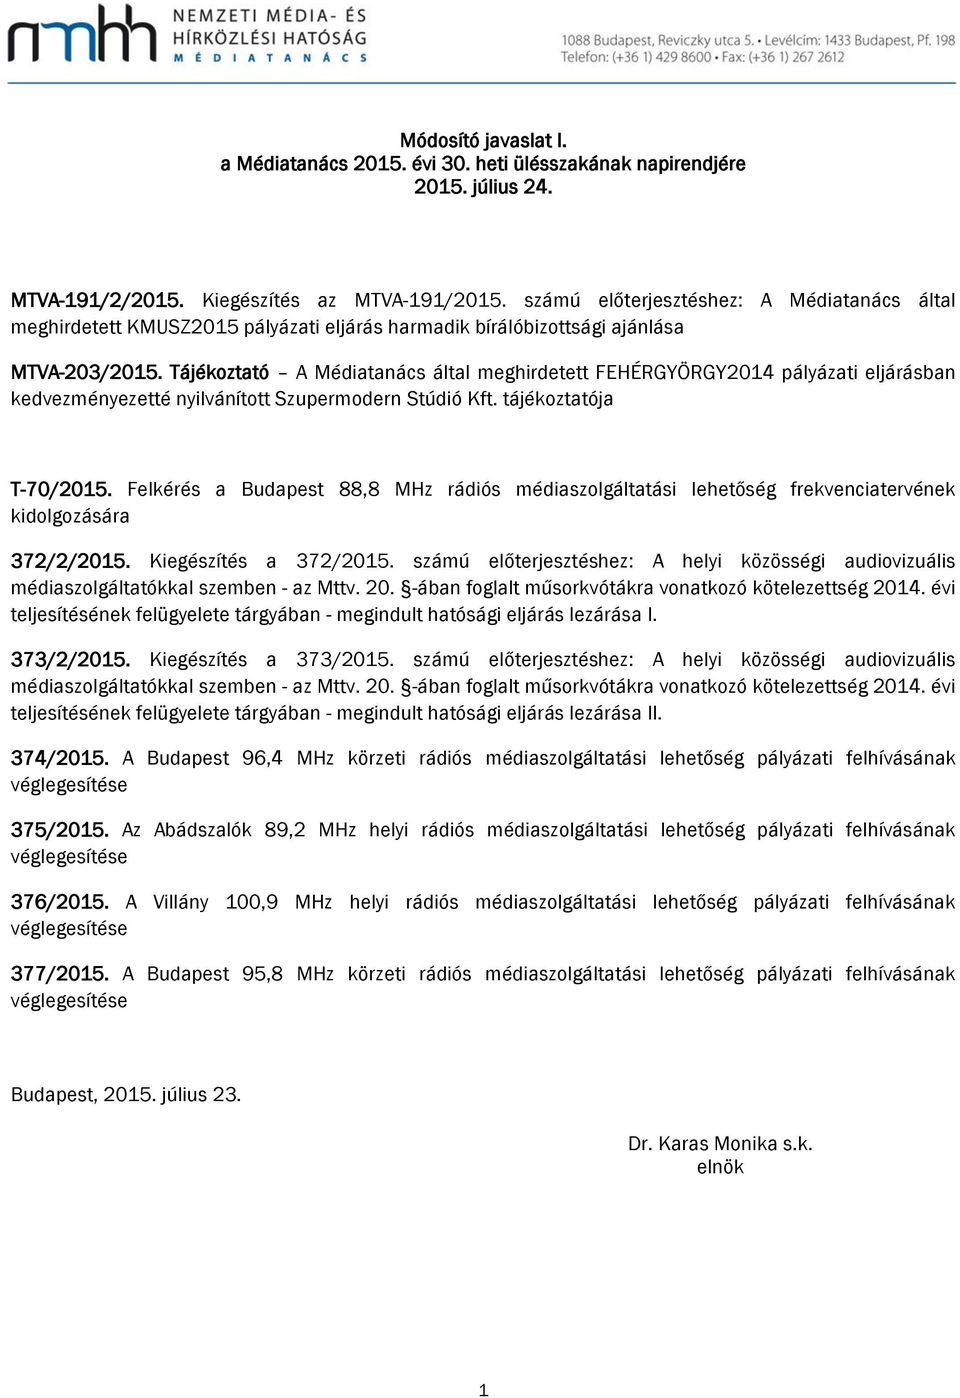 Tájékoztató A Médiatanács által meghirdetett FEHÉRGYÖRGY2014 pályázati eljárásban kedvezményezetté nyilvánított Szupermodern Stúdió Kft. tájékoztatója T-70/2015.